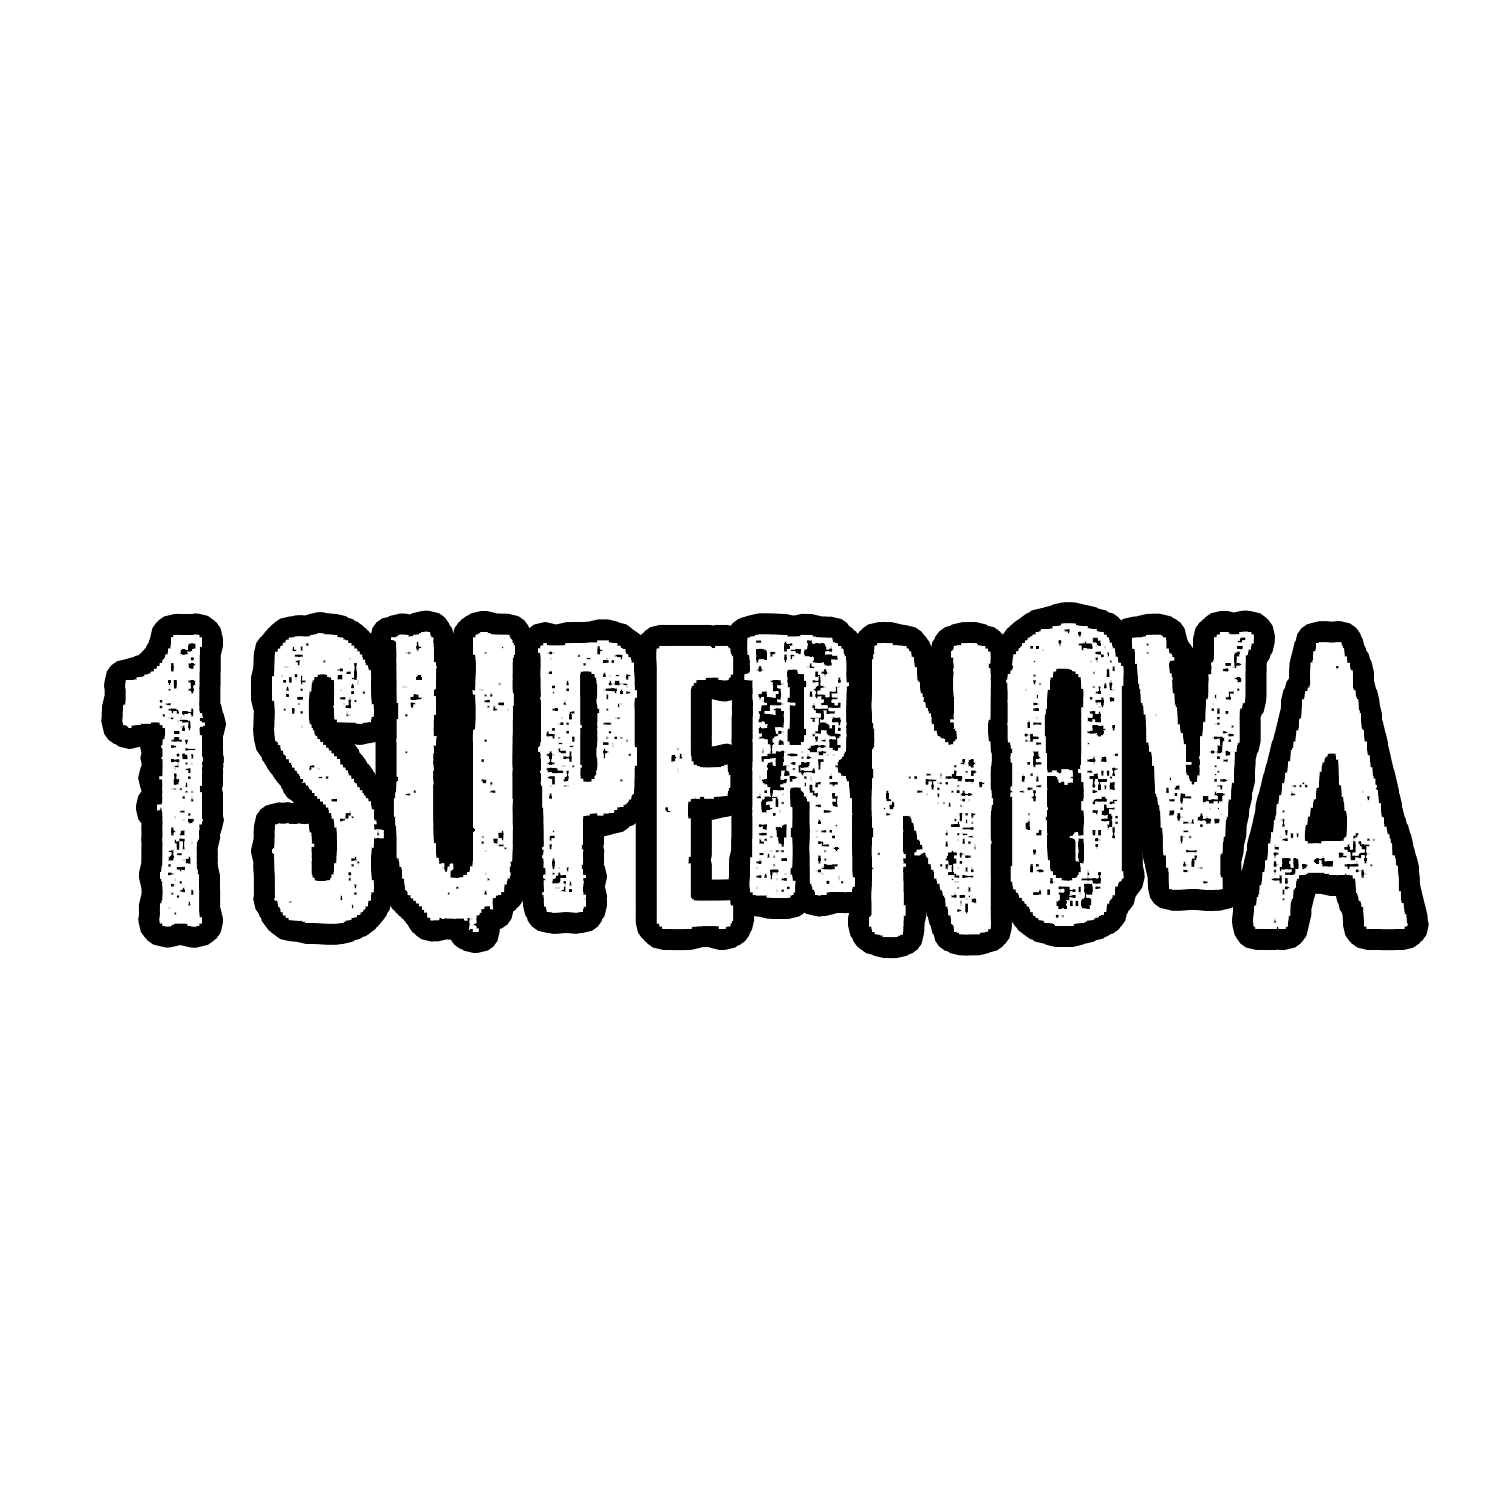 1 Supernova